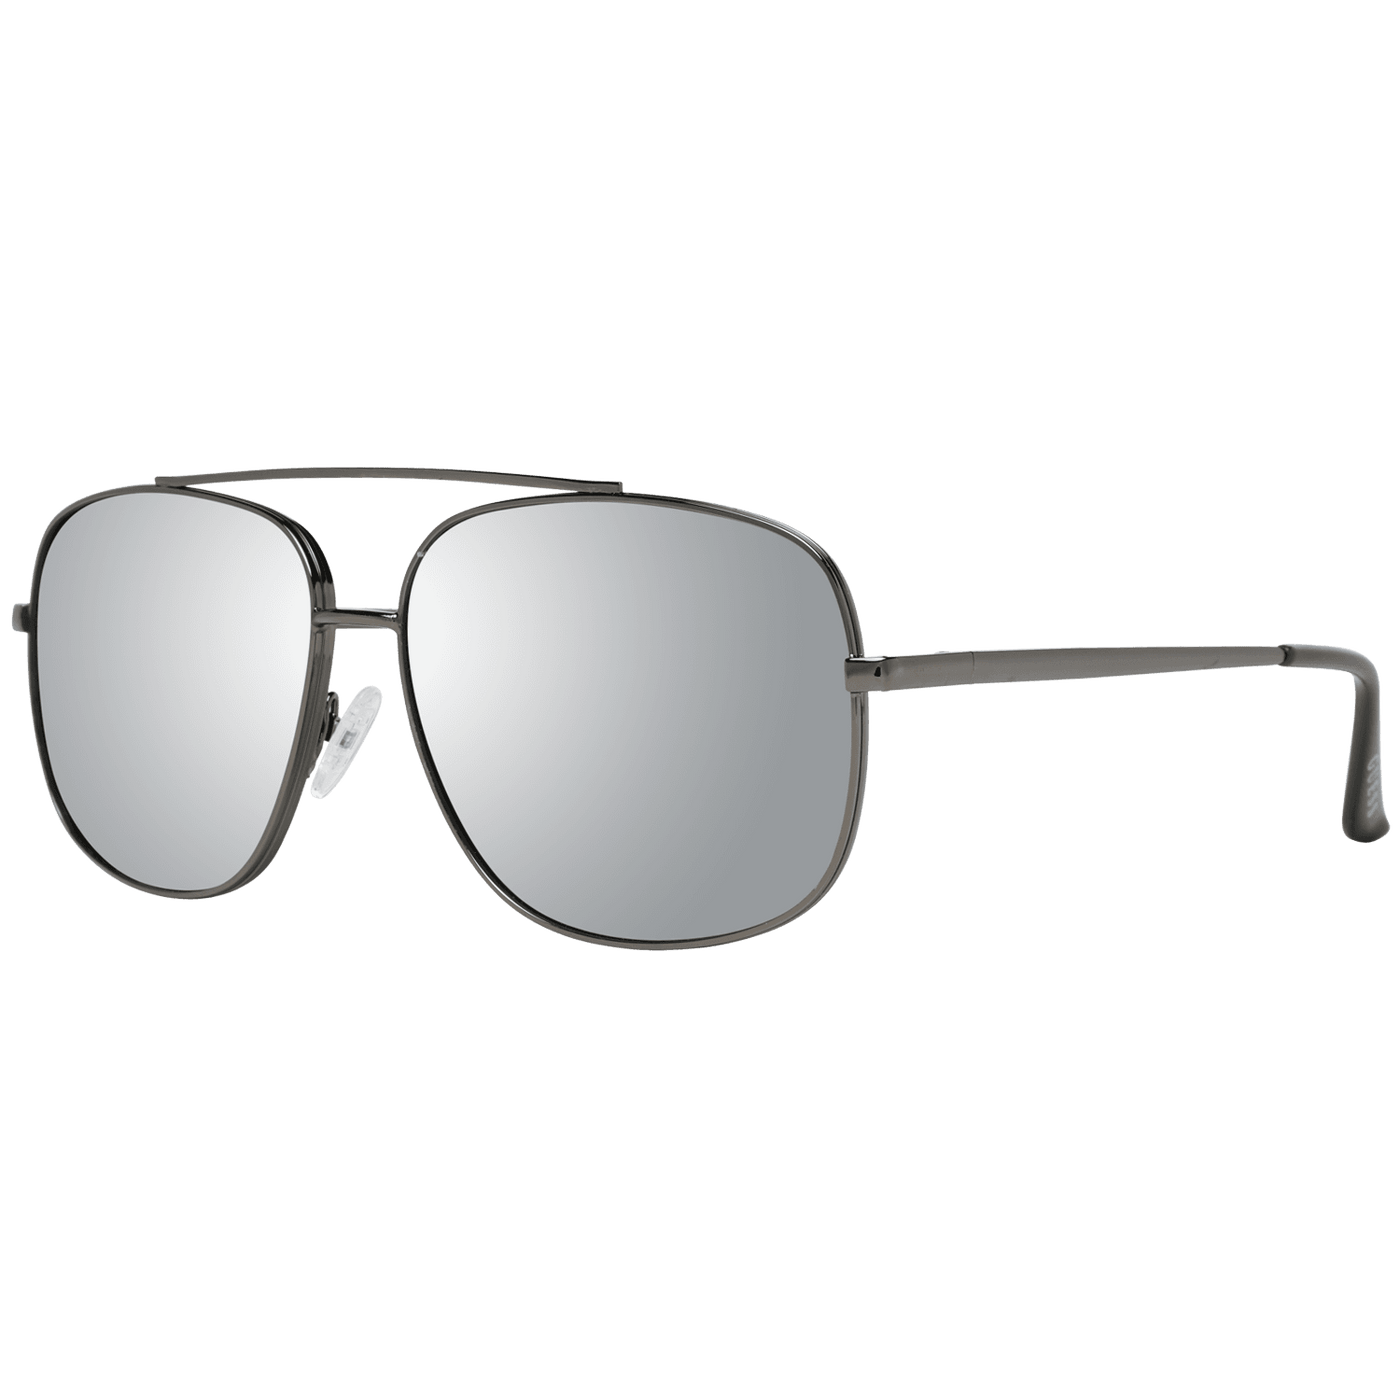 Guess Gray Sunglasses #men, feed-1, Gray, Guess, Sunglasses for Men - Sunglasses at SEYMAYKA